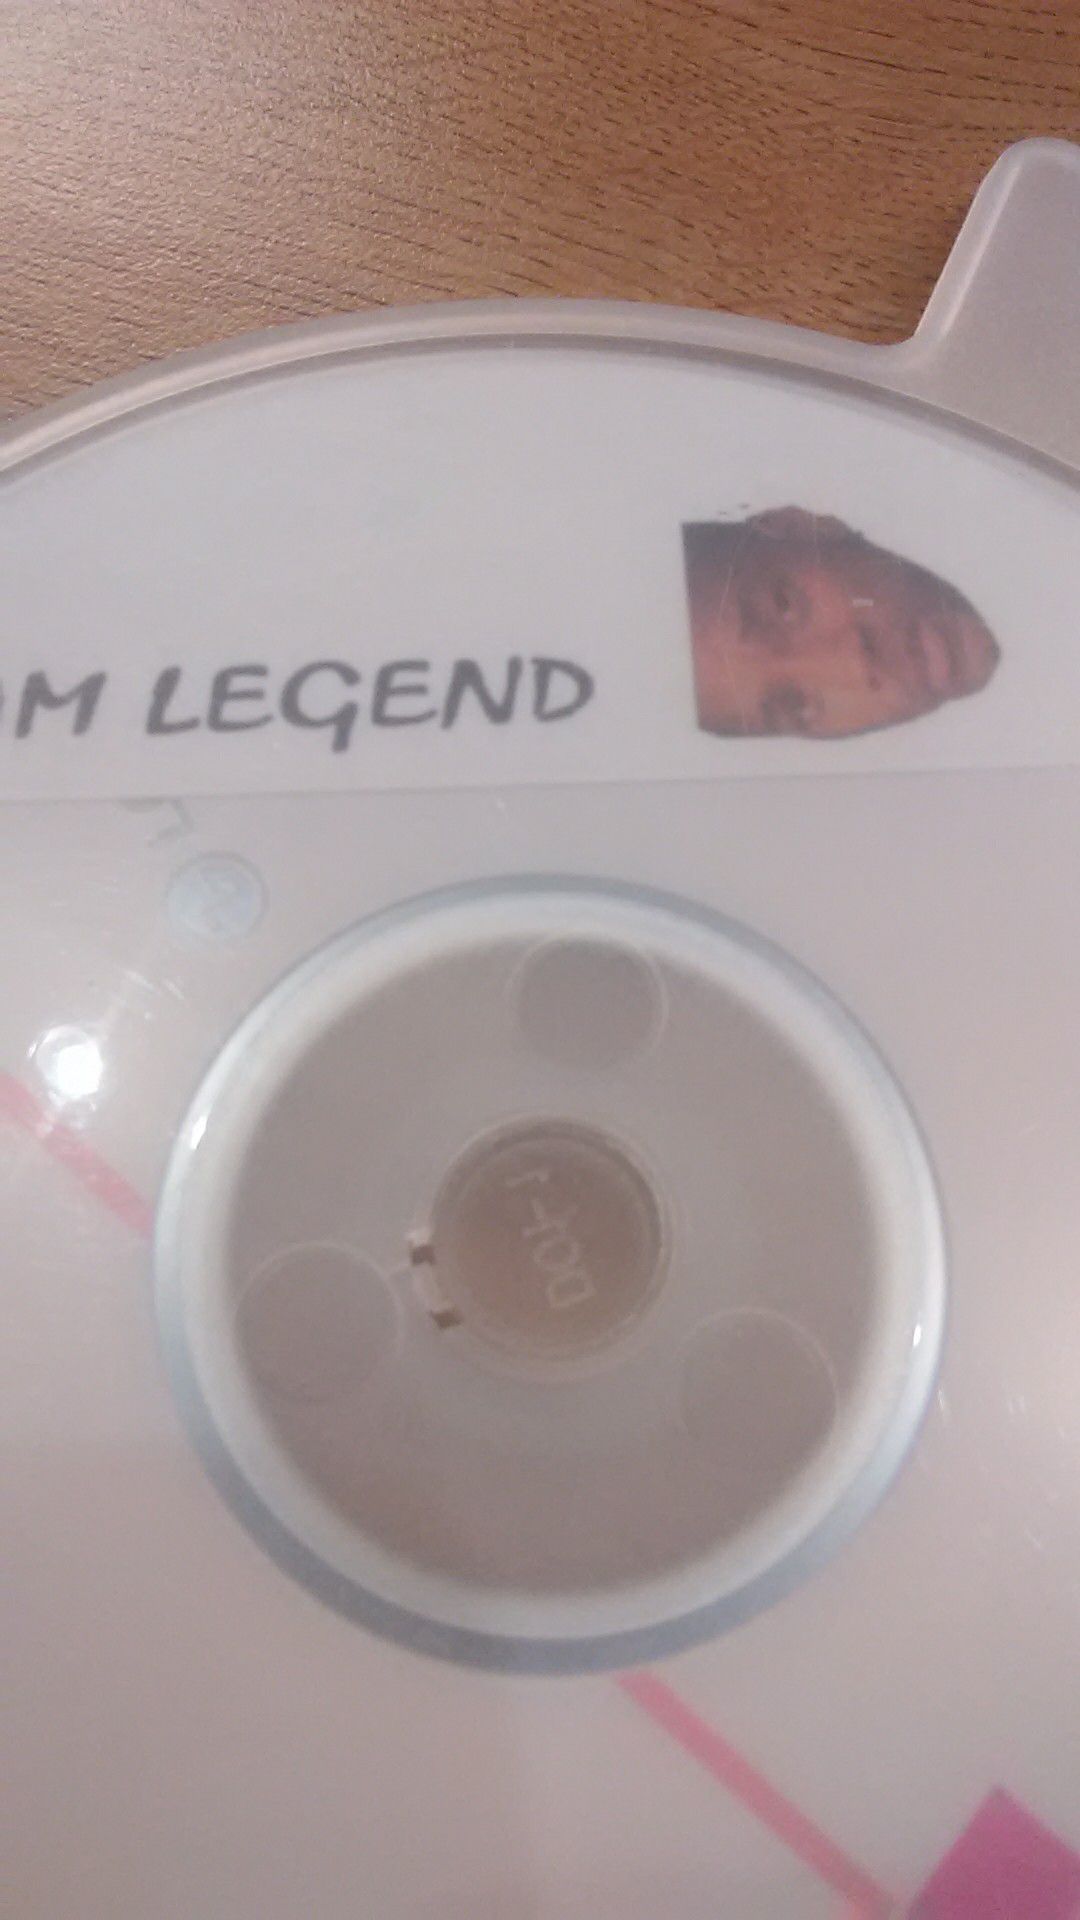 DVD I am Legend